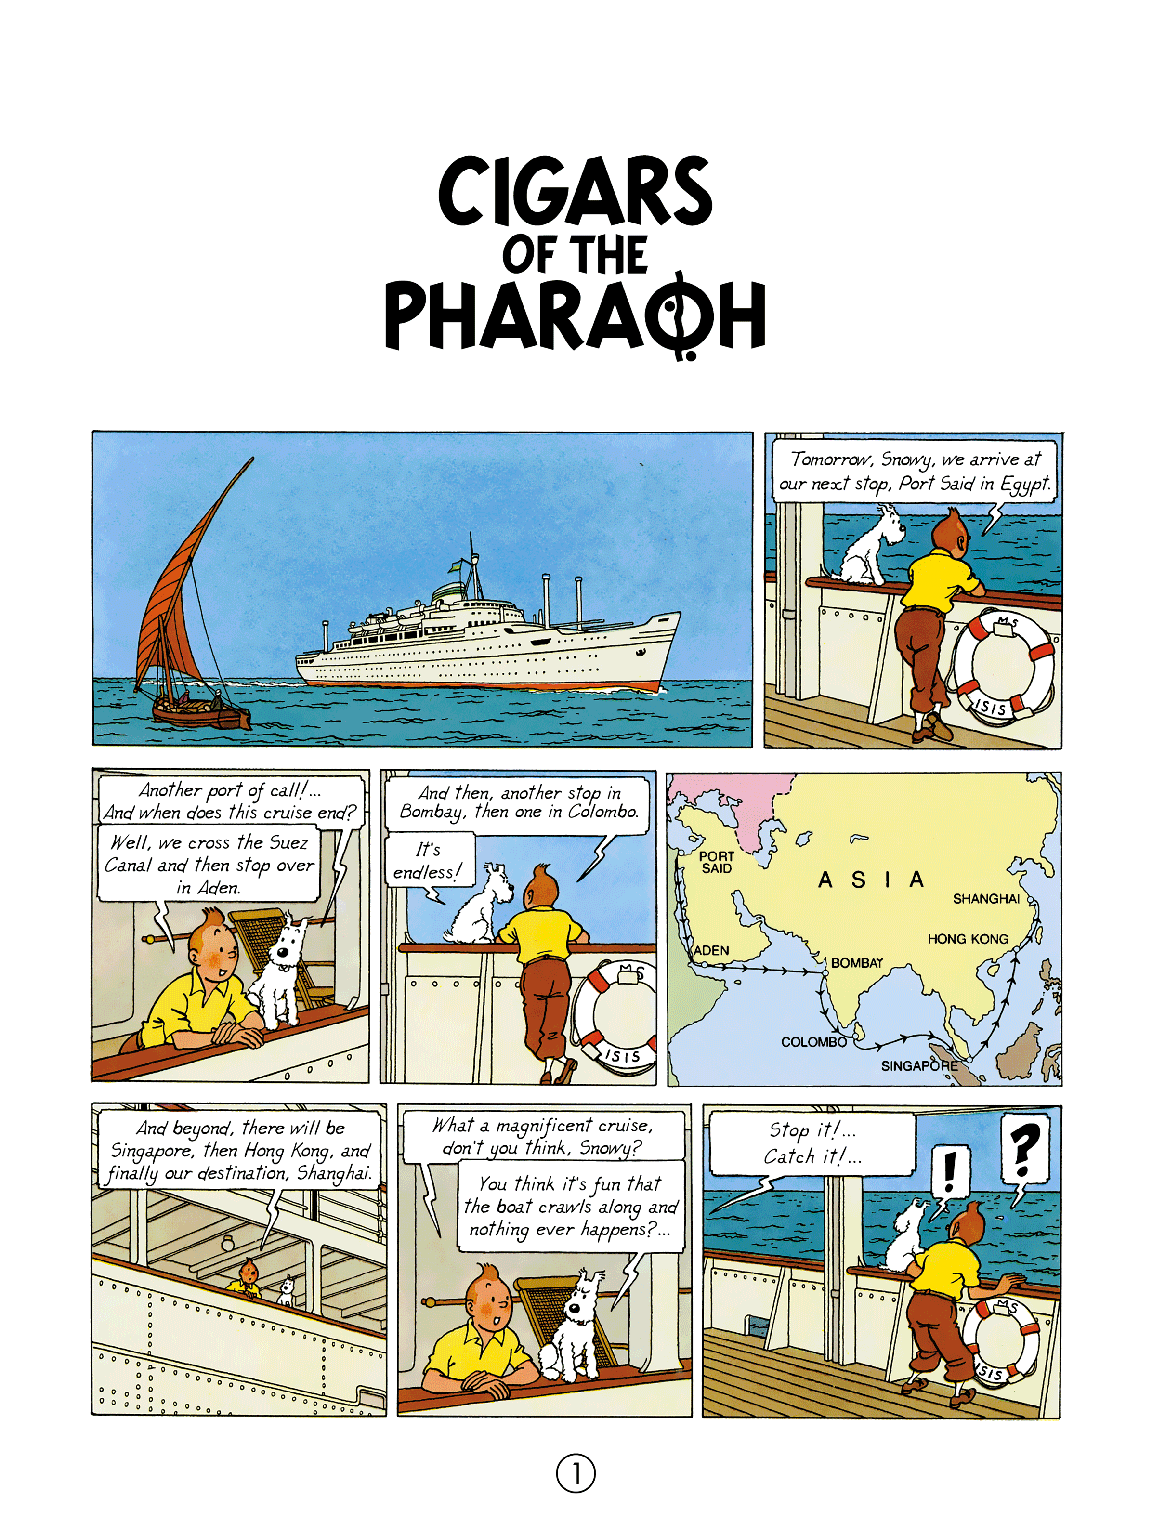 صفحه اول کتاب سیگارهای فرعون